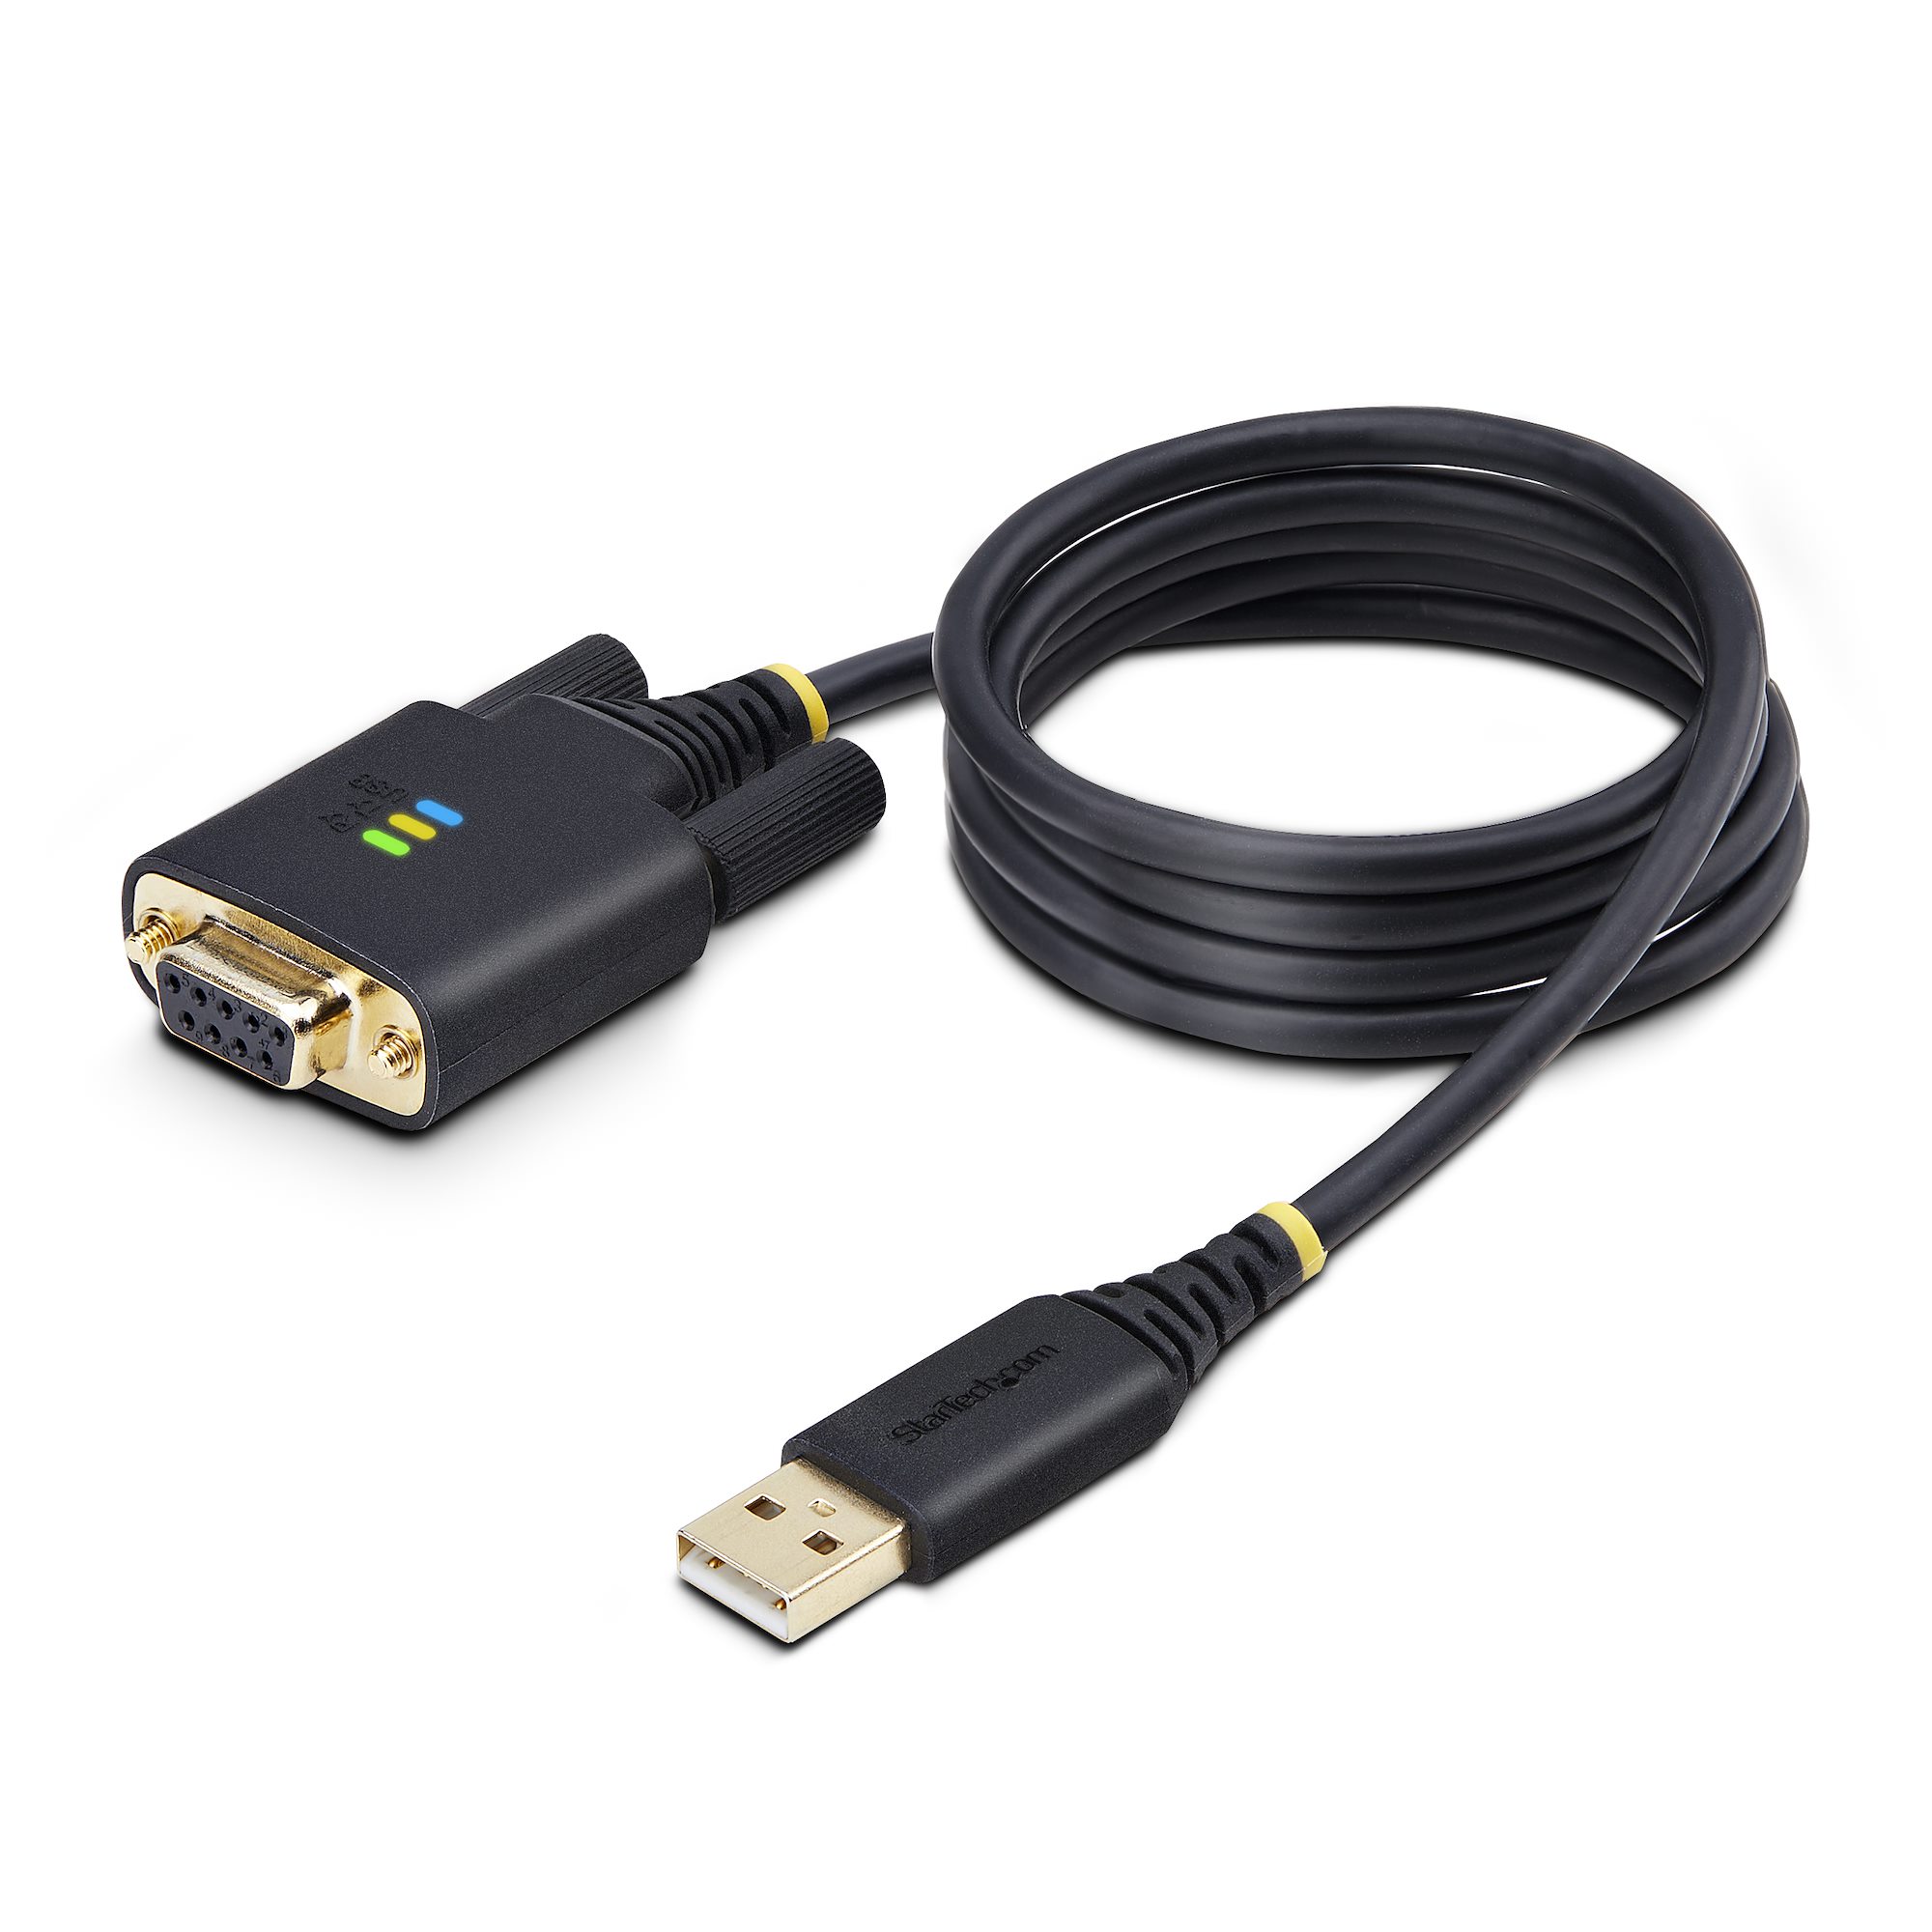 Startech : CABLE IMPRIMANTE USB 2.0 A VERS USB B COUDE A DROITE M/M 1 M